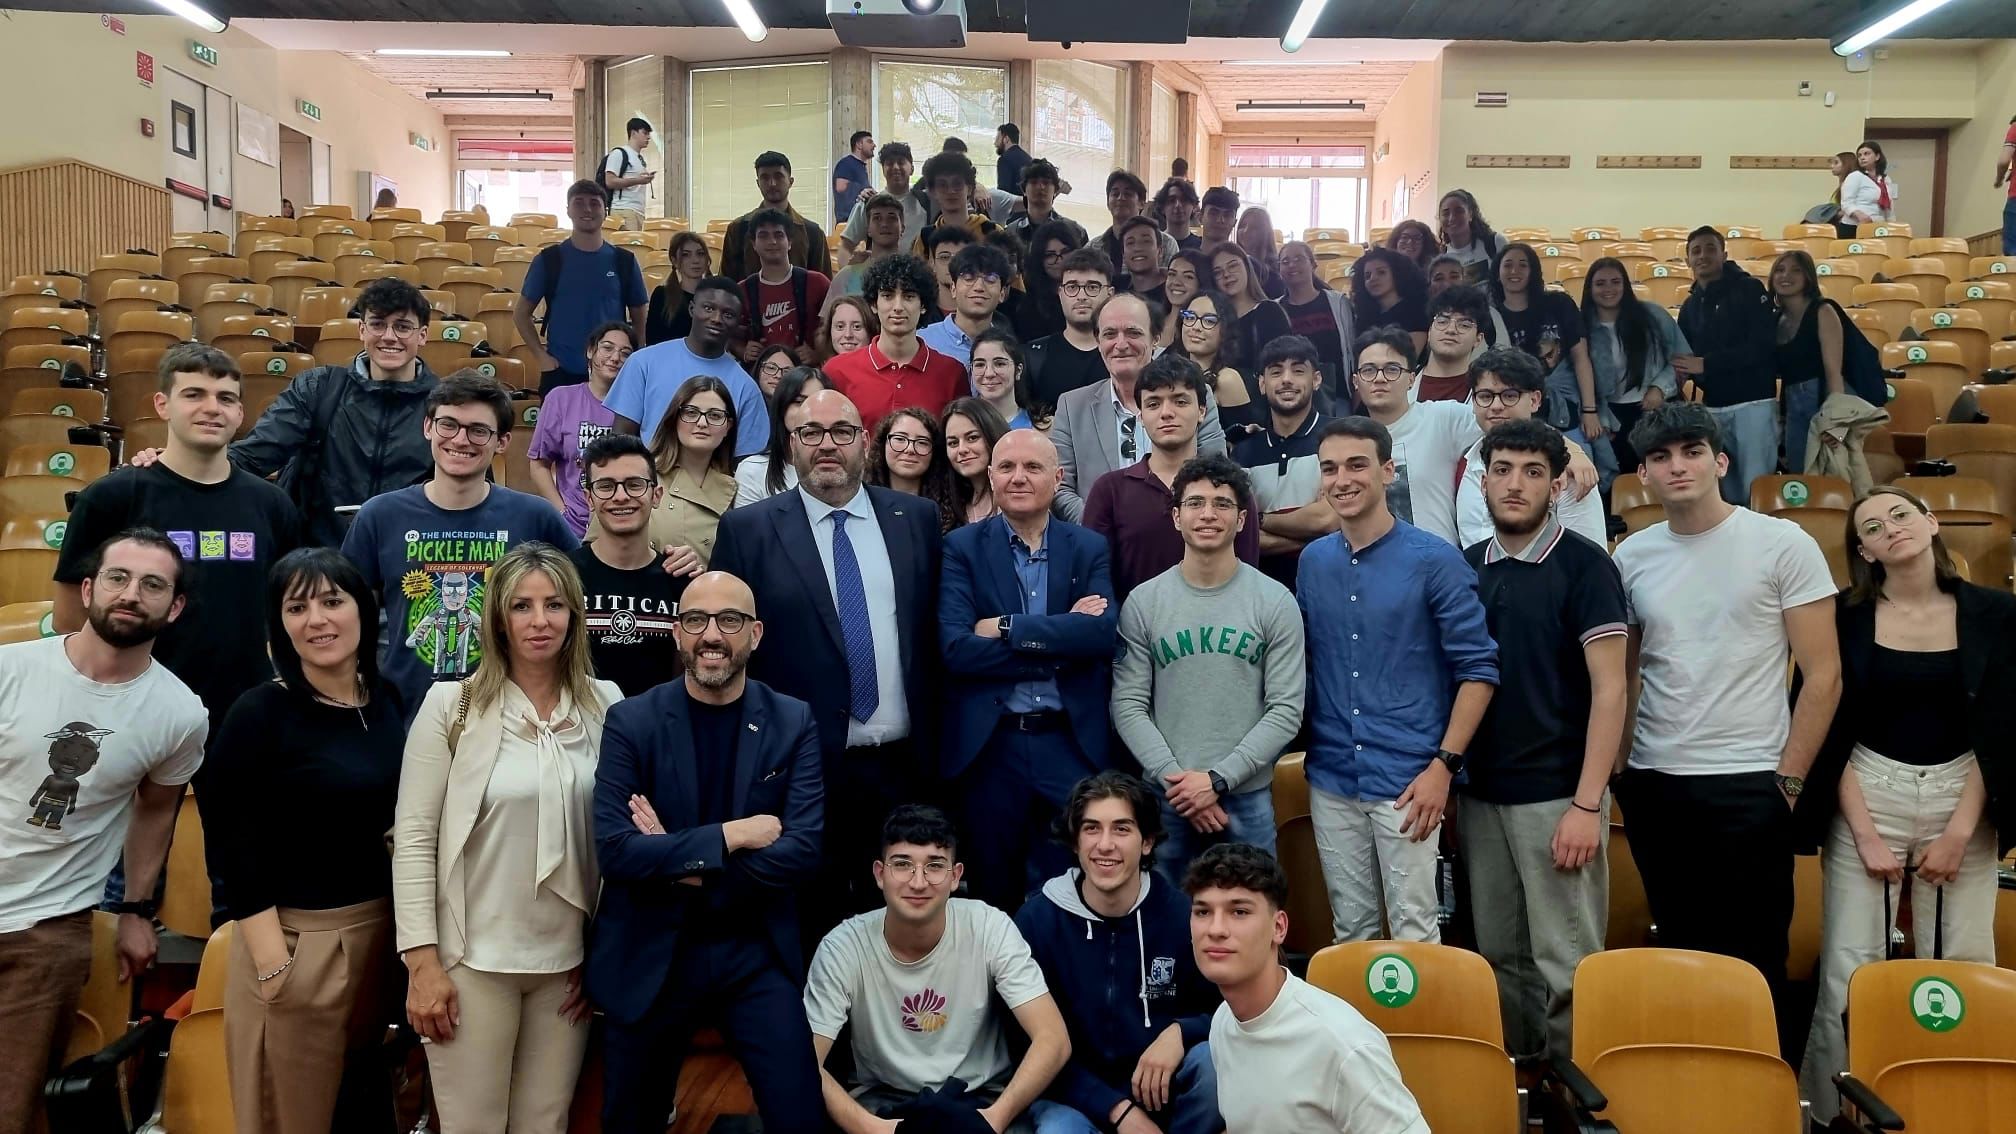 Gruppo Arena, un fiore all’occhiello dell’imprenditoria siciliana, ospite al corso di laurea in Economia Aziendale